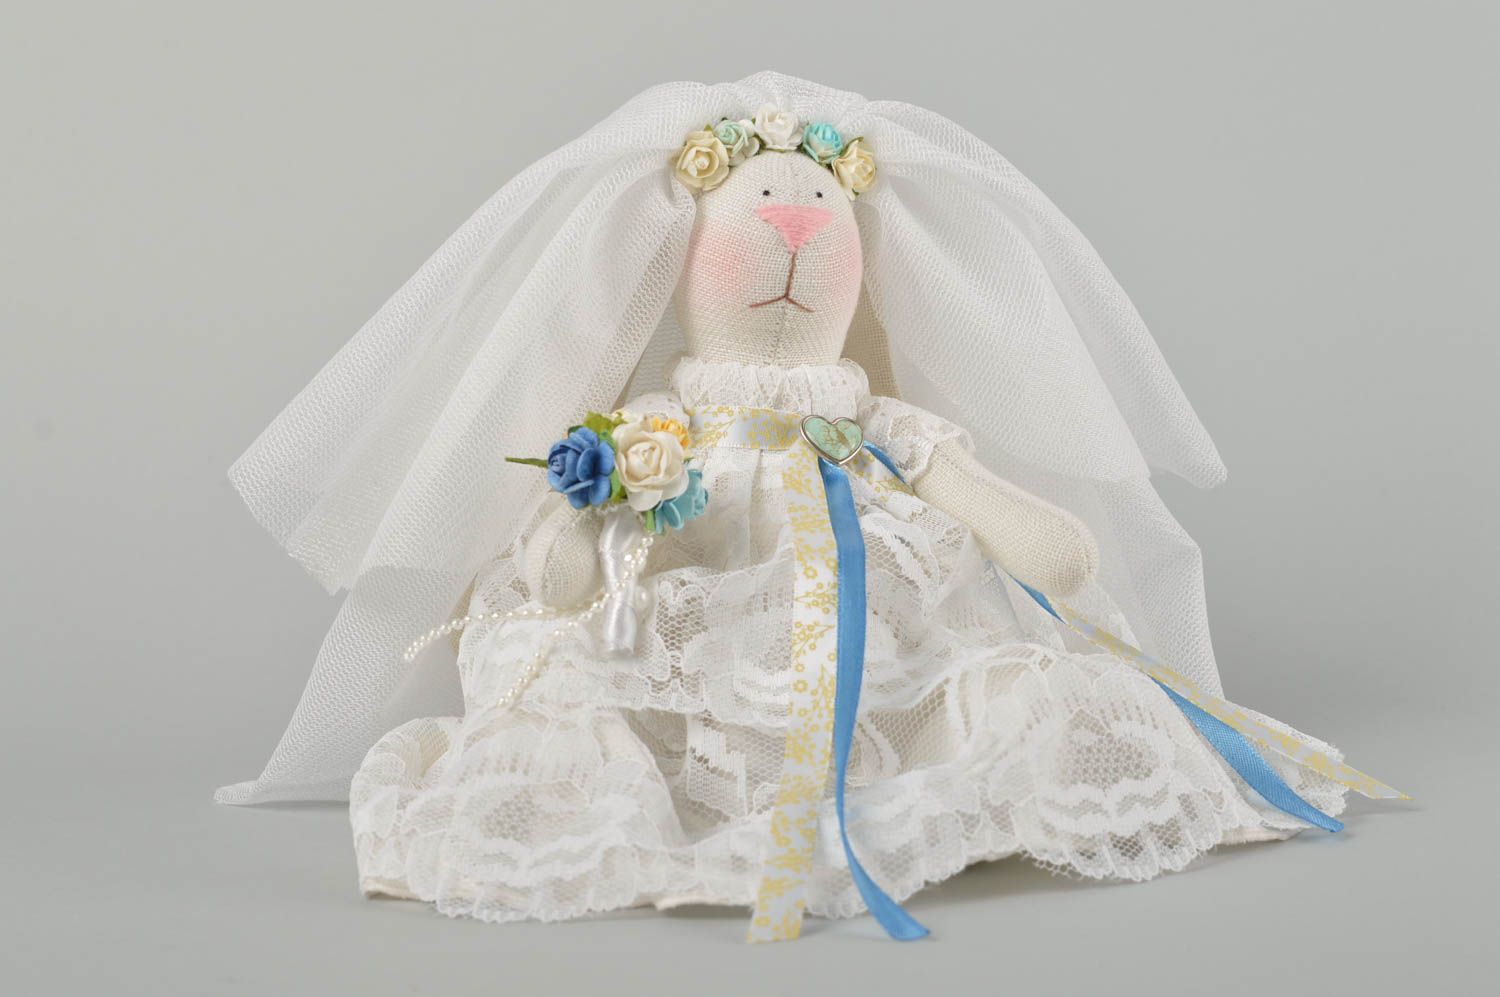 Свадебный заяц невеста игрушка ручной работы свадебный декор подарок молодоженам фото 2